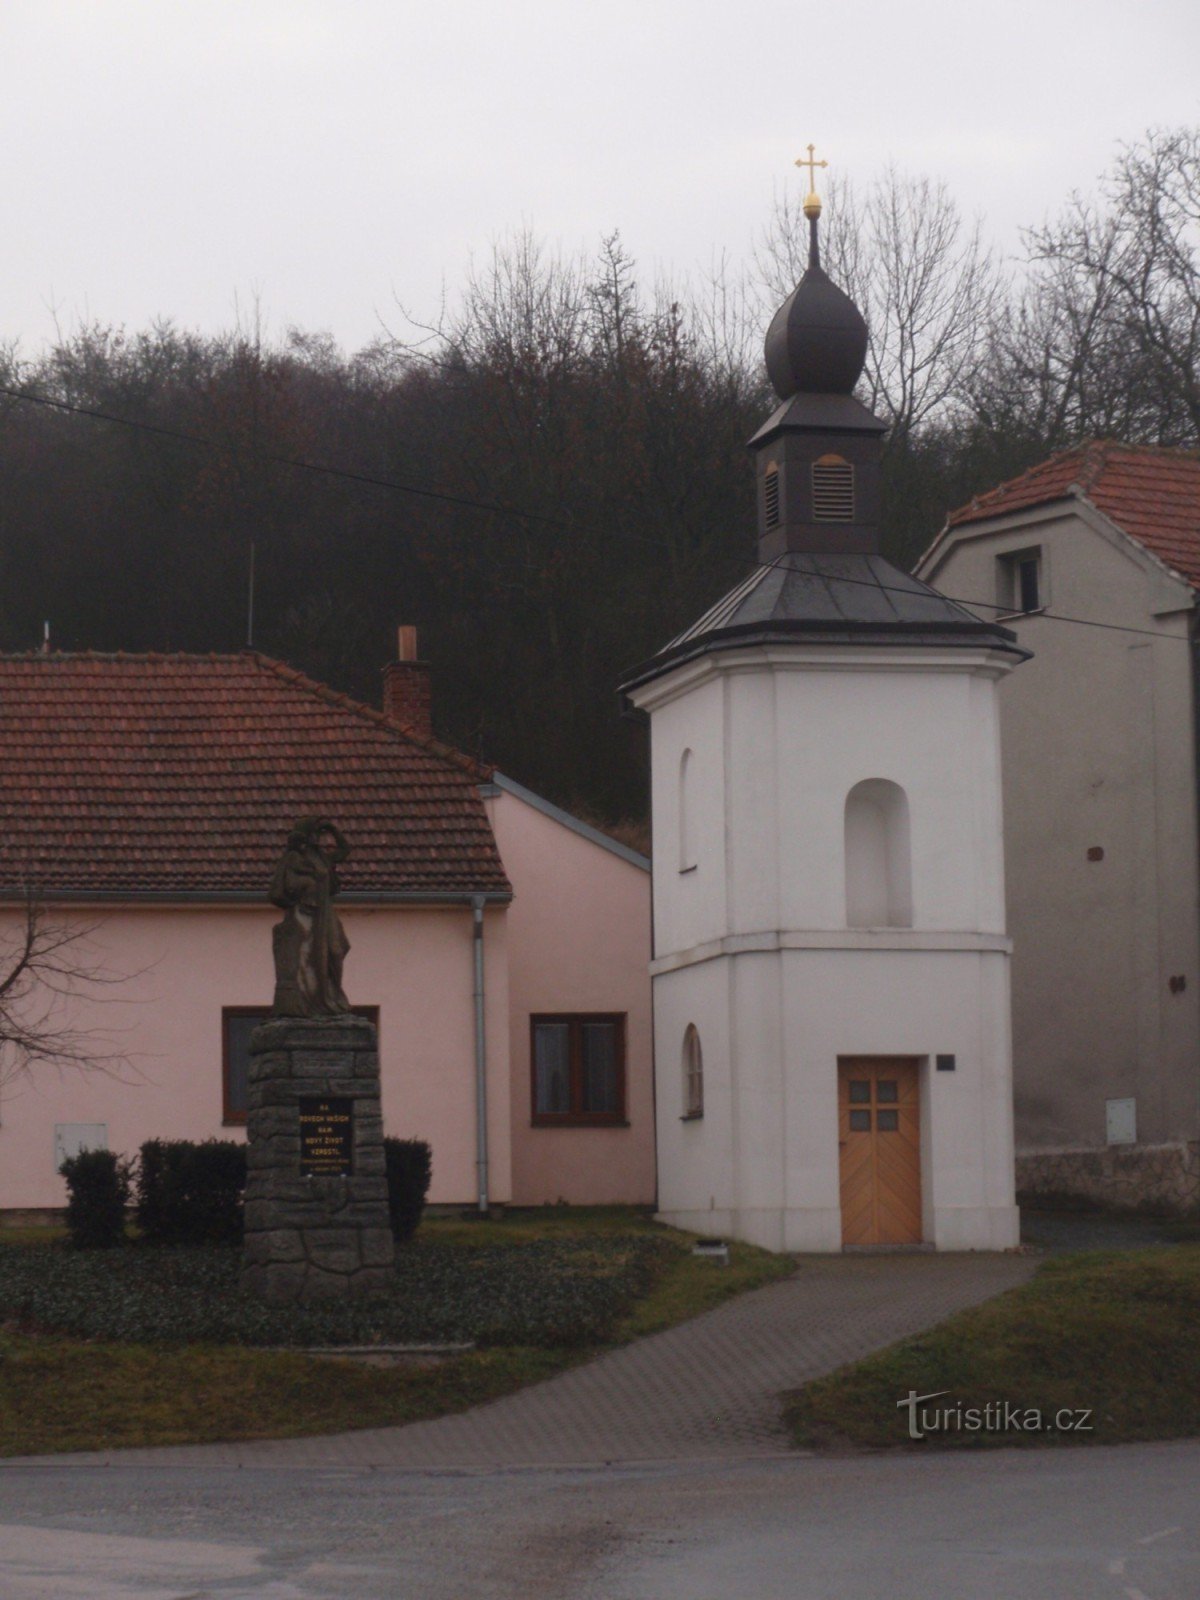 Neslovice falu műemlékei